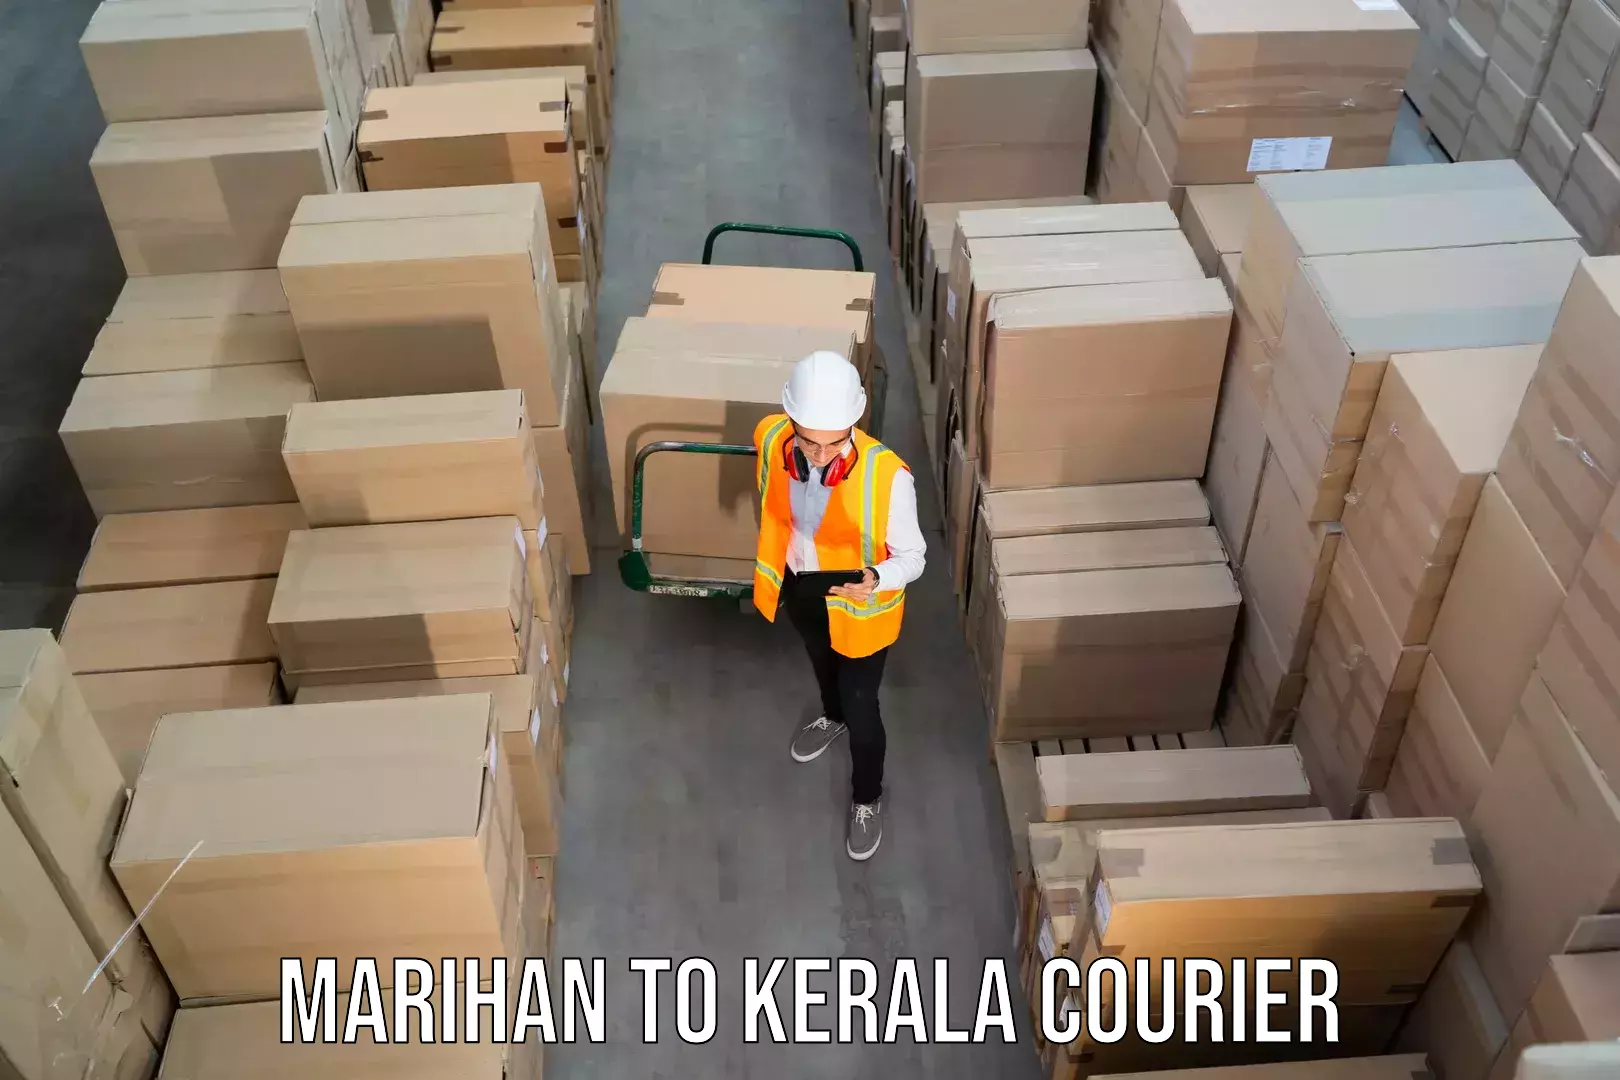 Versatile courier options Marihan to Perumbavoor